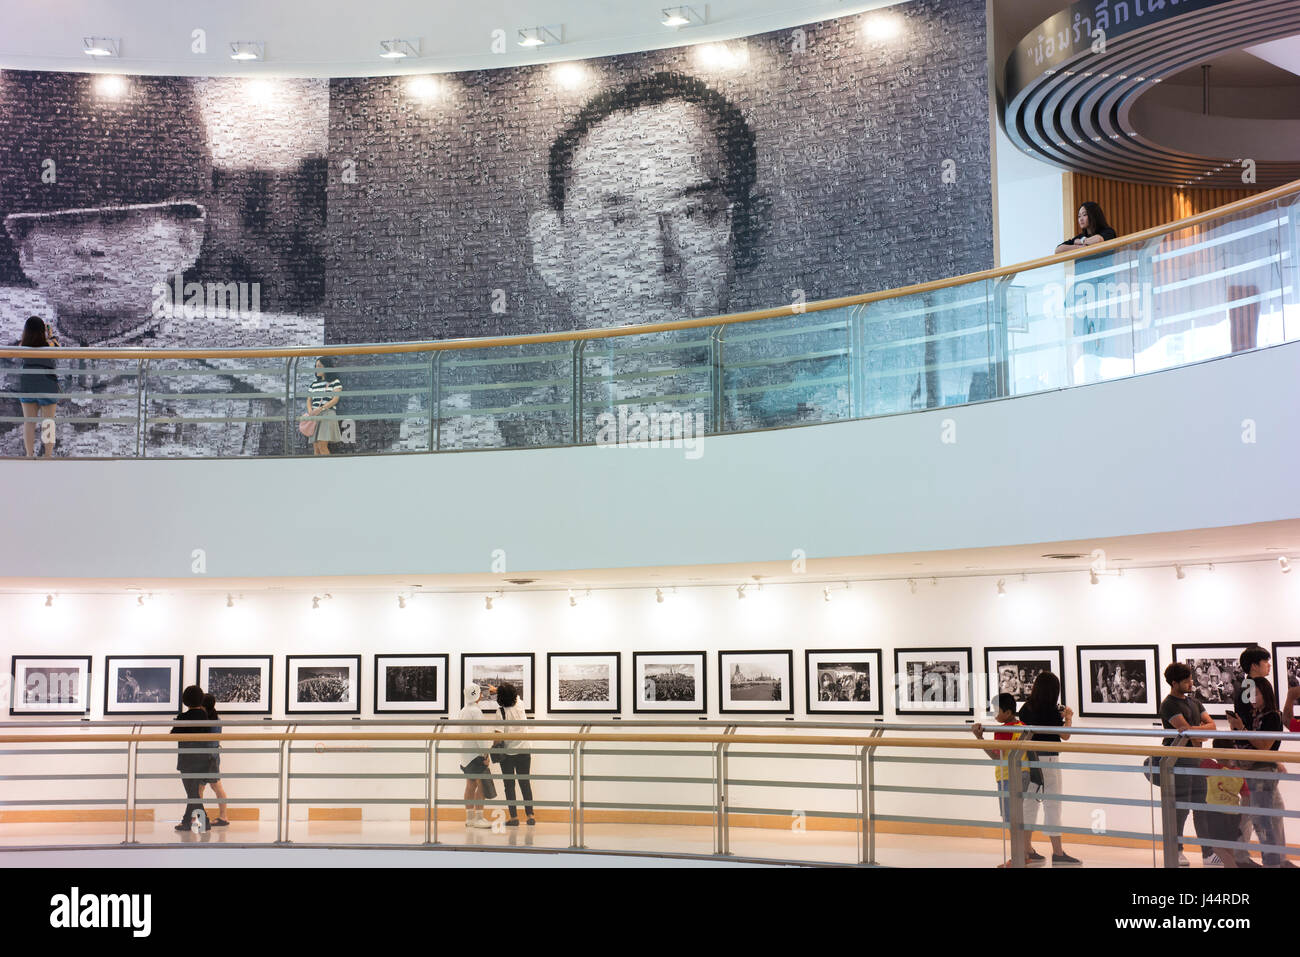 Voir les photos de visiteurs et par feu le Roi Bhumibol Adulyadej de Thaïlande dans le Bangkok Art and Culture Centre. Banque D'Images